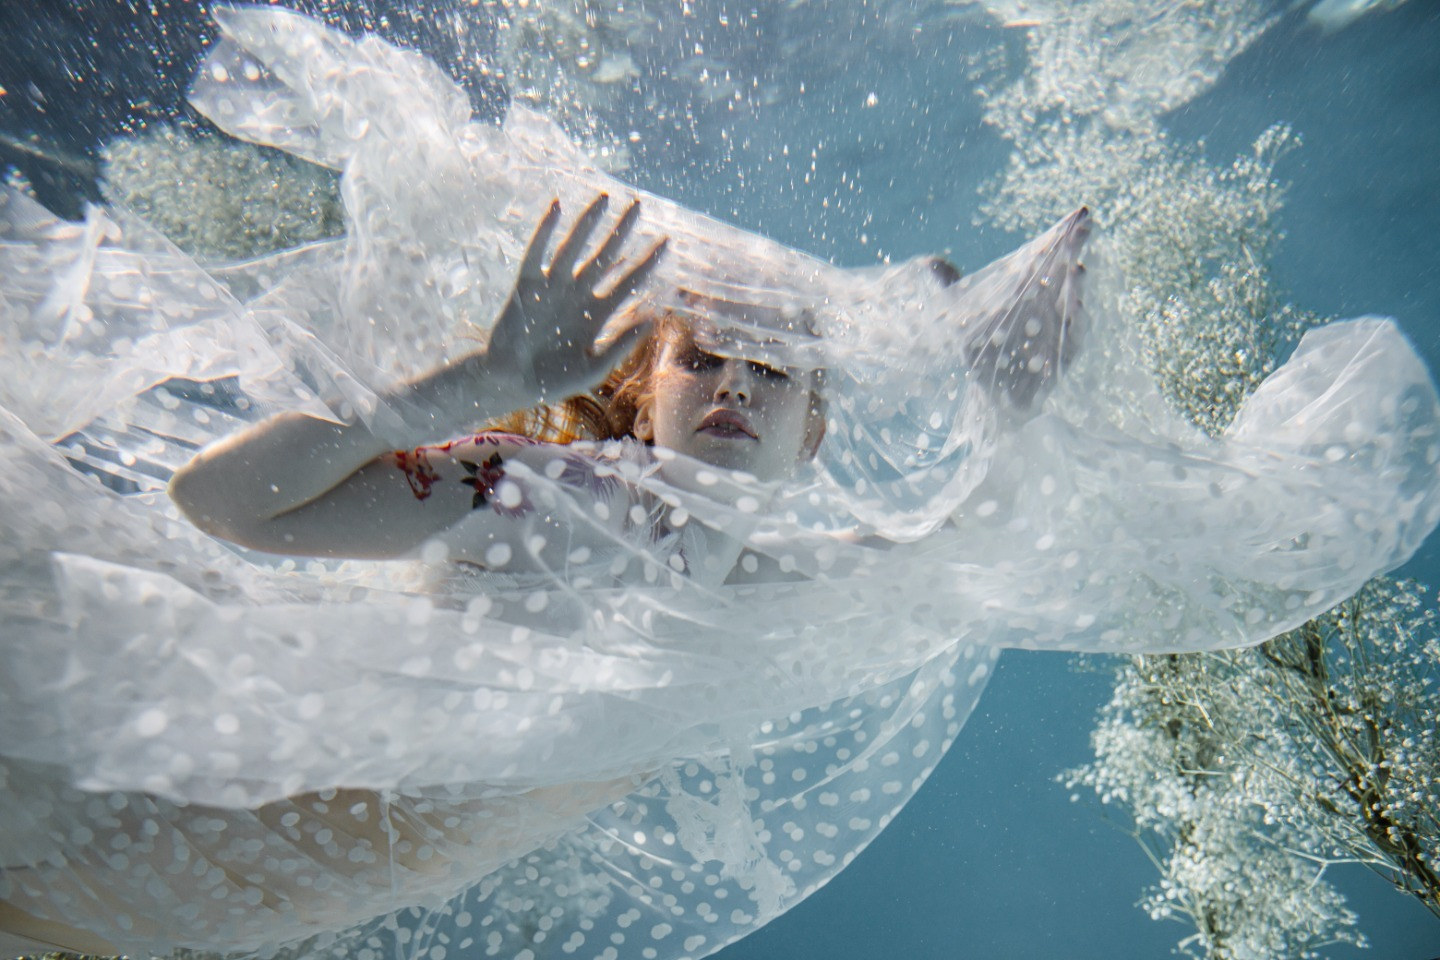 ФОТО ИЗ СТАТЬИ: Under water: необычная стилизованная фотосессия под водой